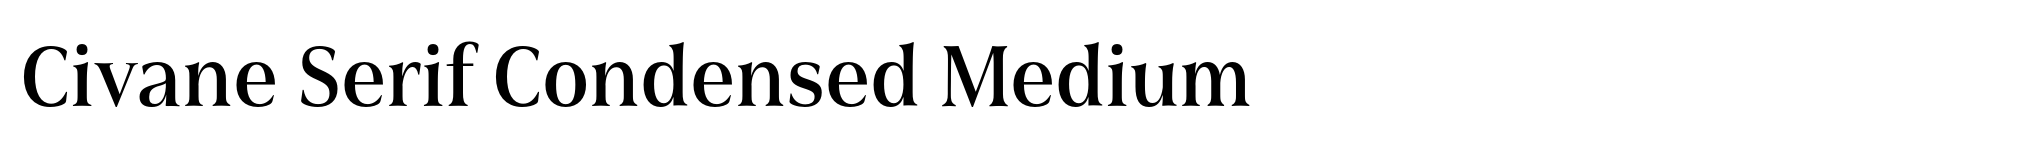 Civane Serif Condensed Medium image